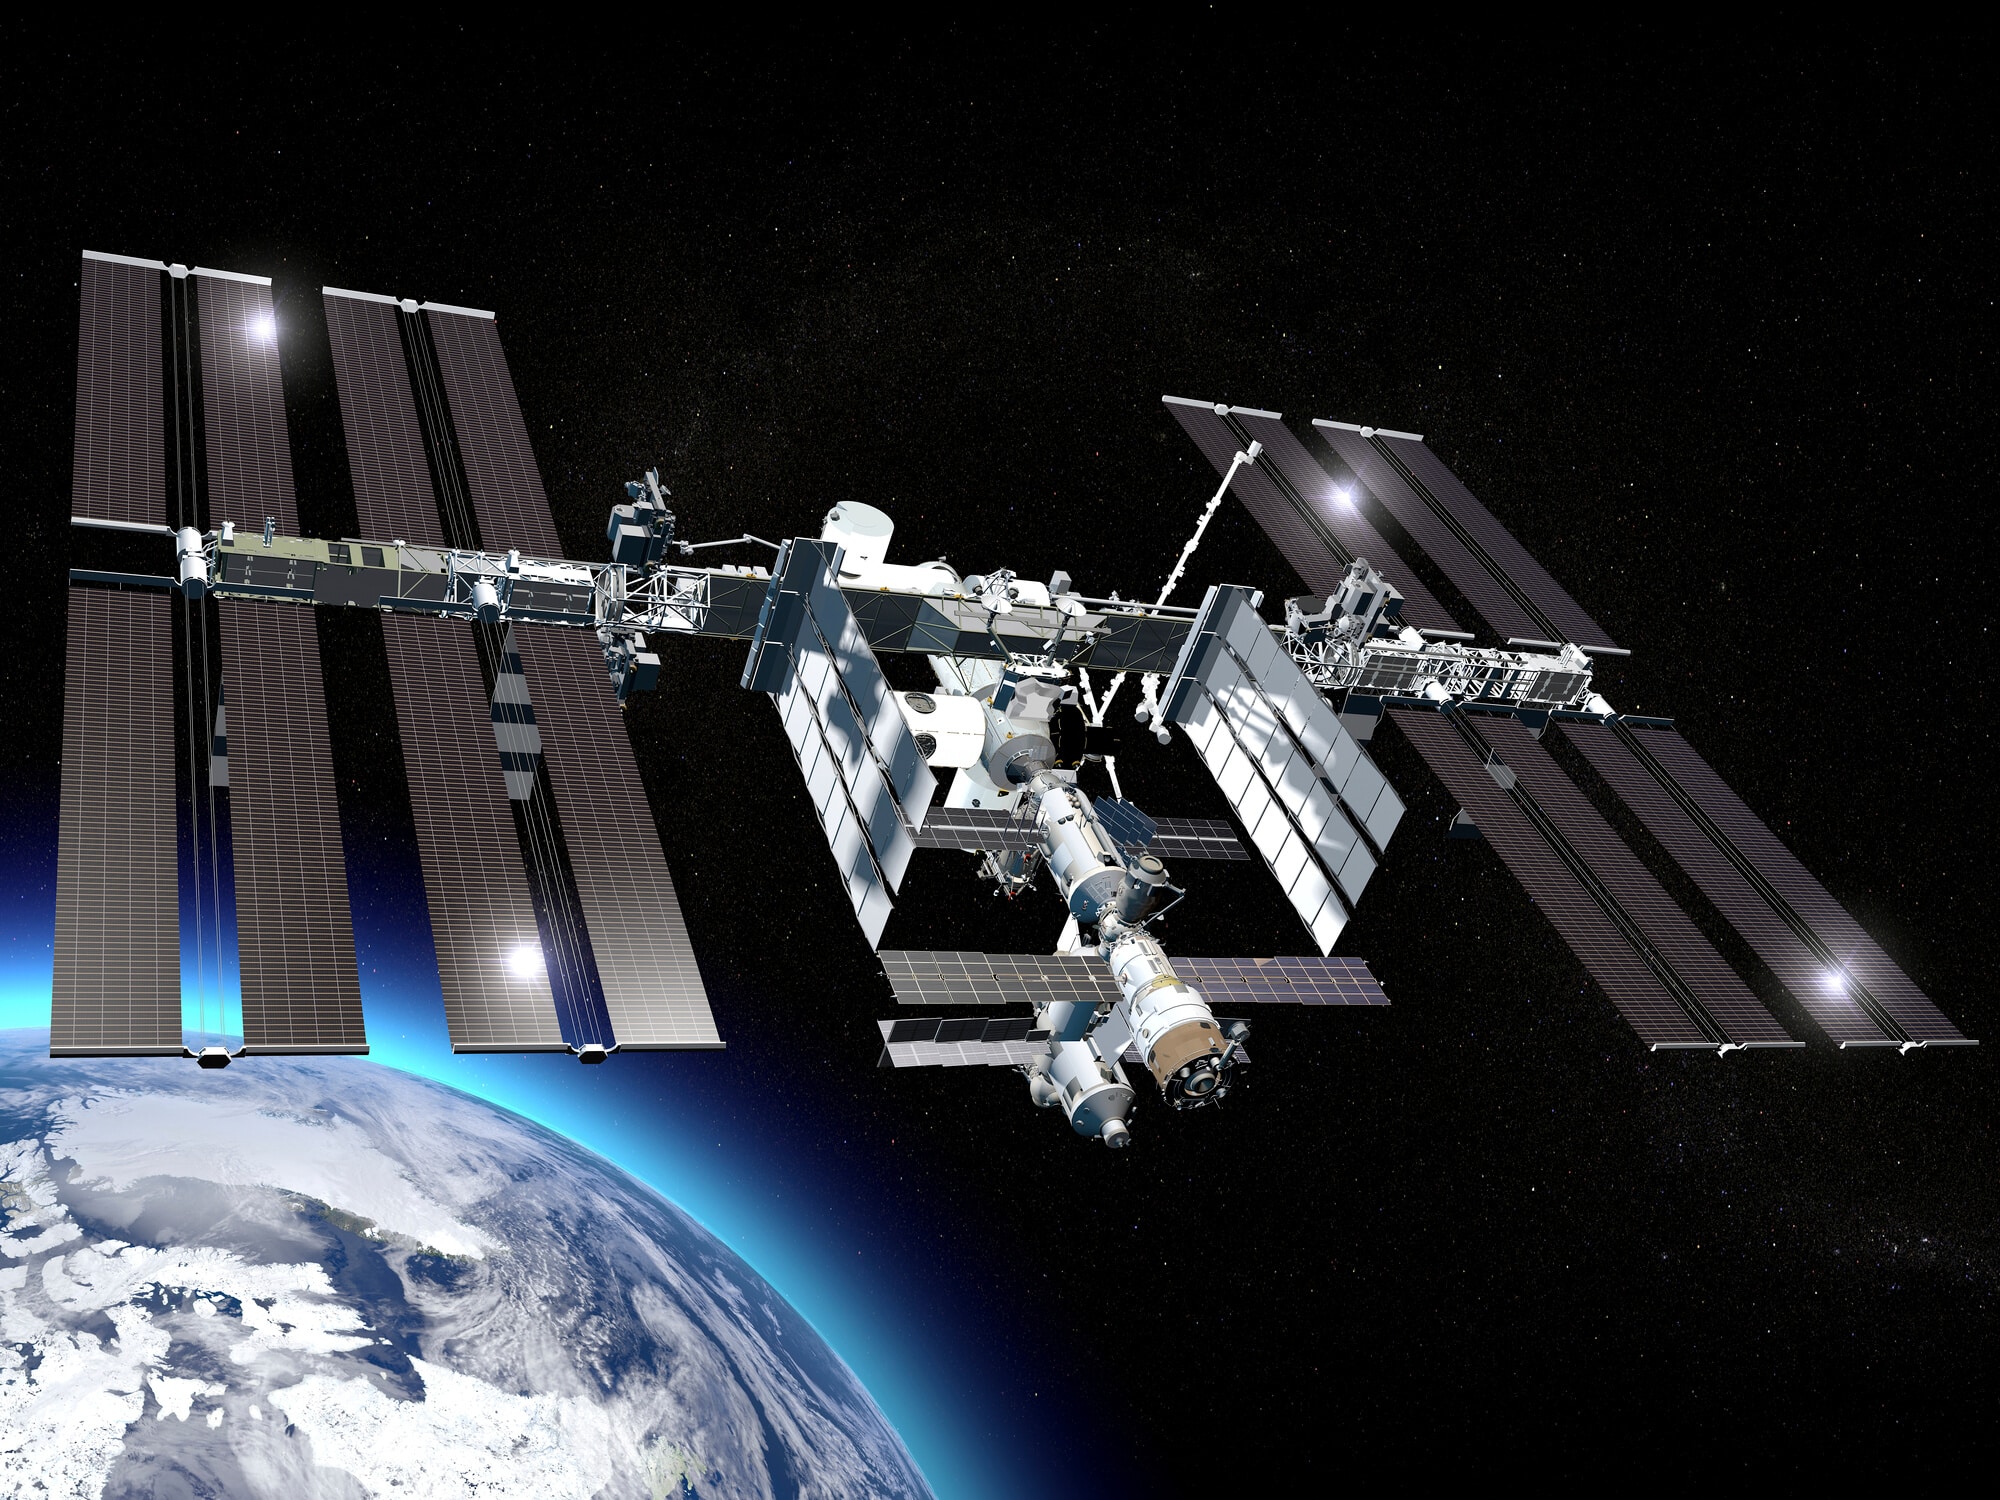 The International Space Station. Photo: depositphotos.com